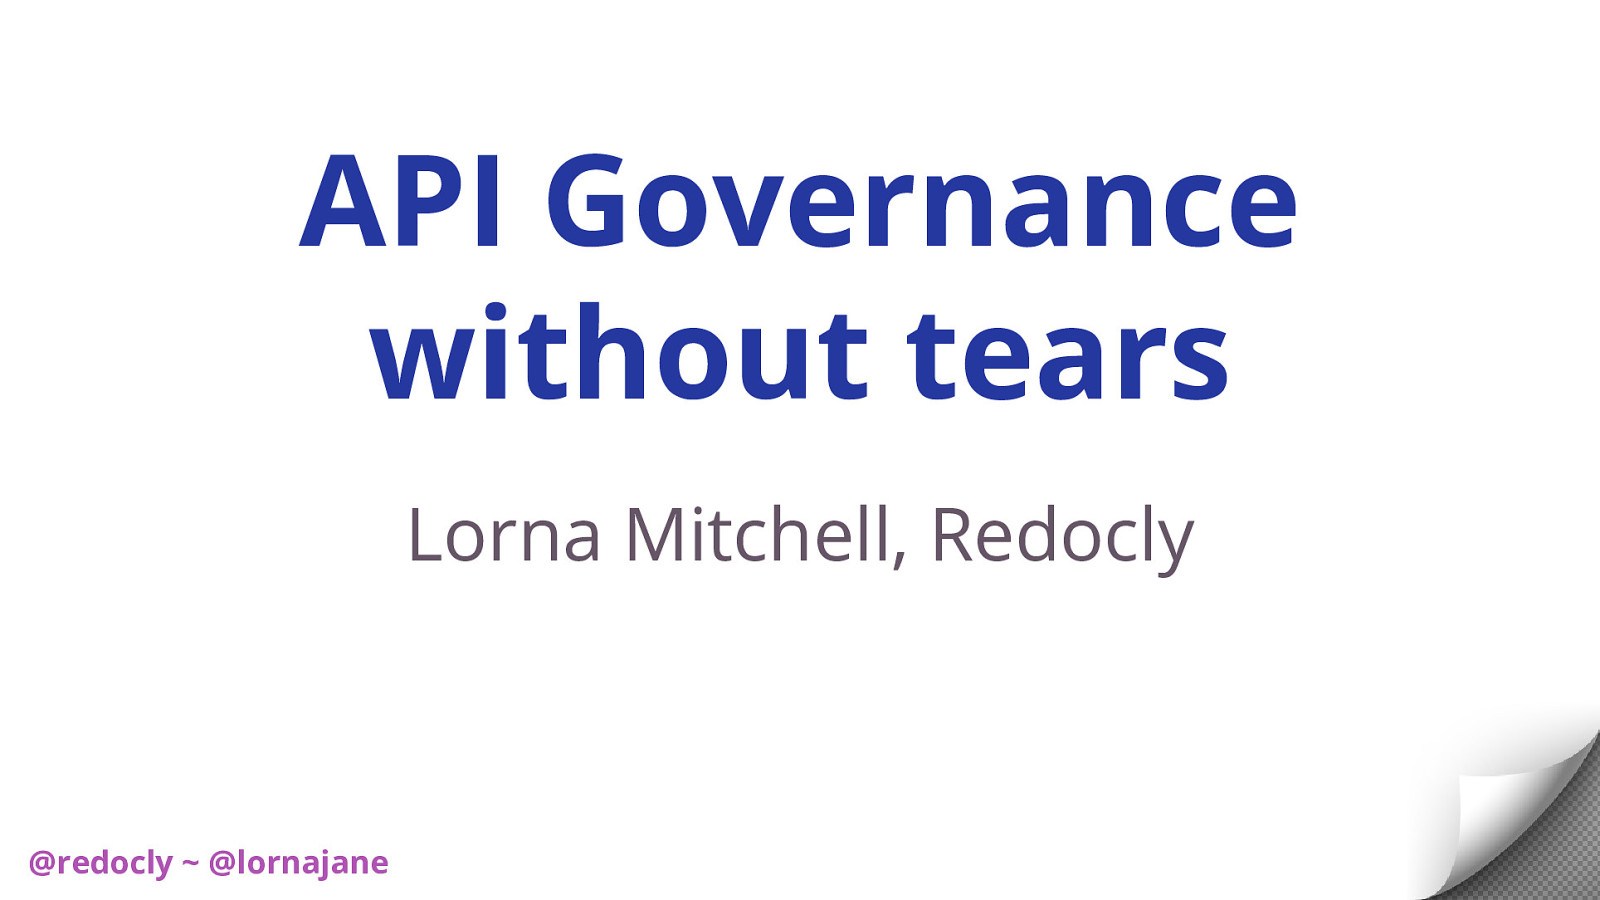 API Governance without tears